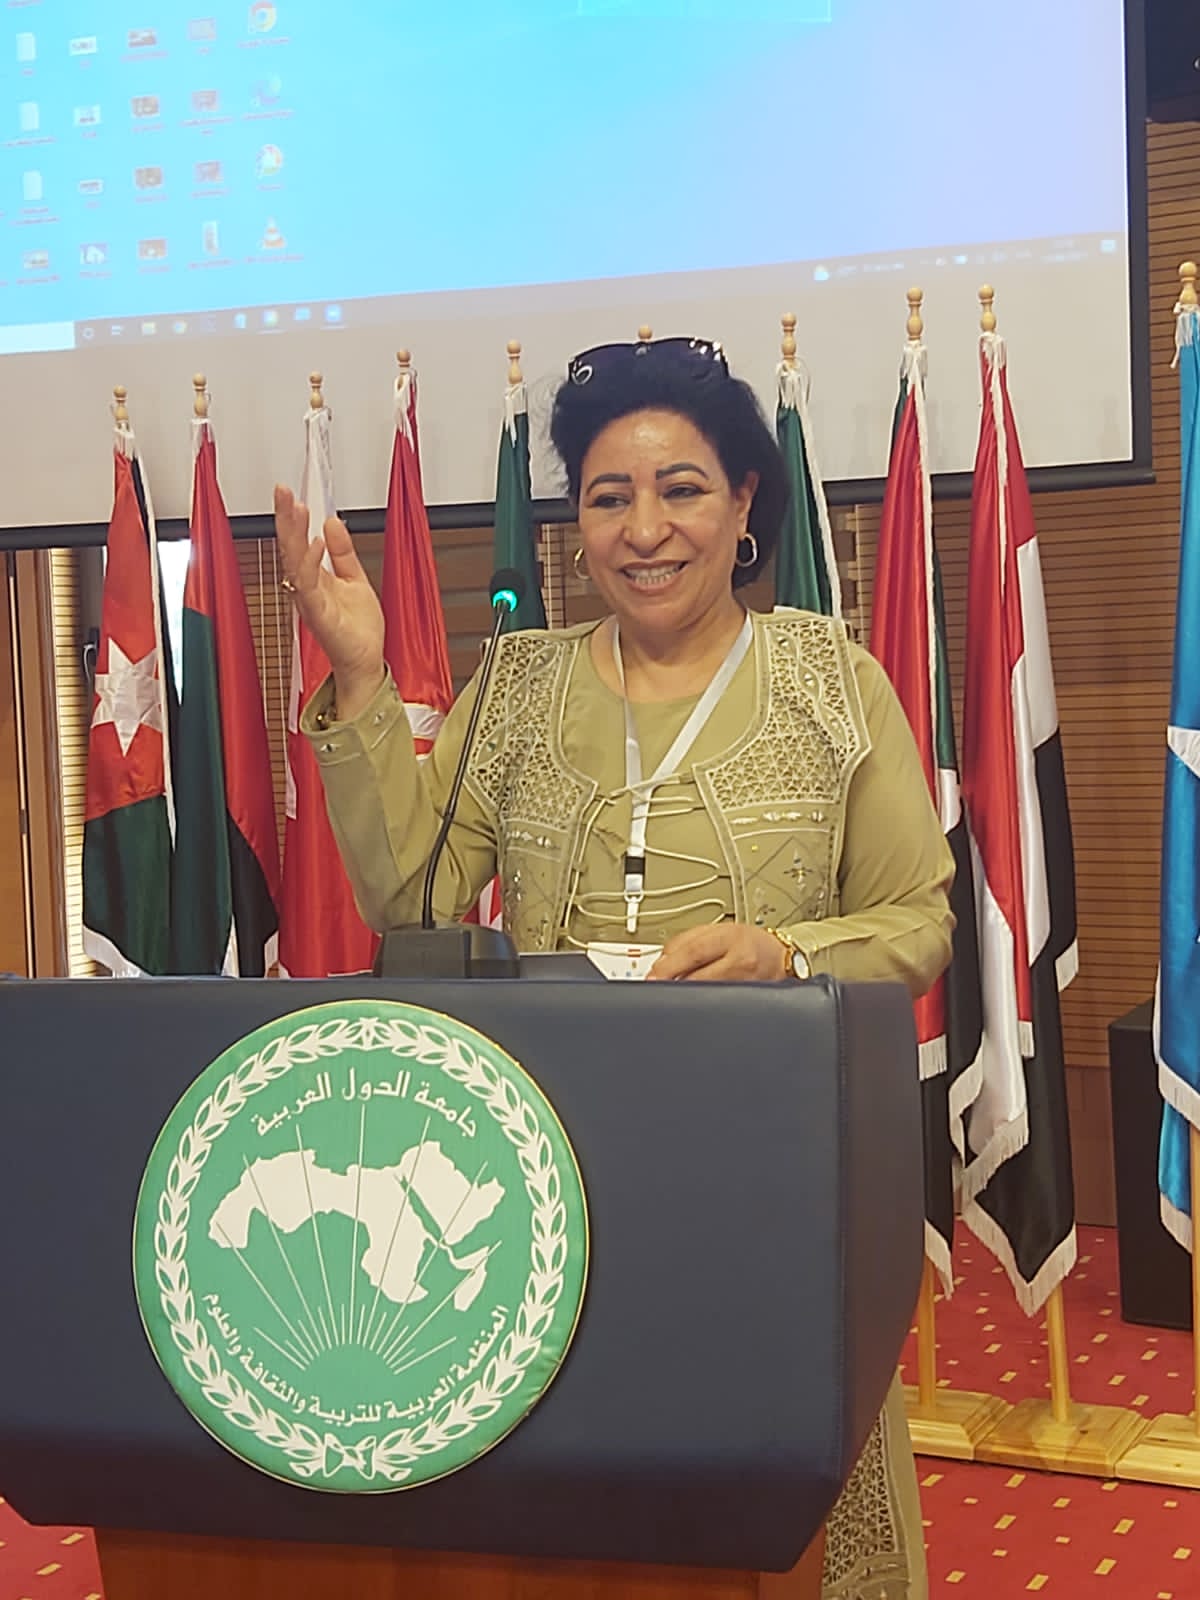 مشاركة أردنية في مؤتمر الإرهاب والتطرف والهجرة غير النظامية بتونس